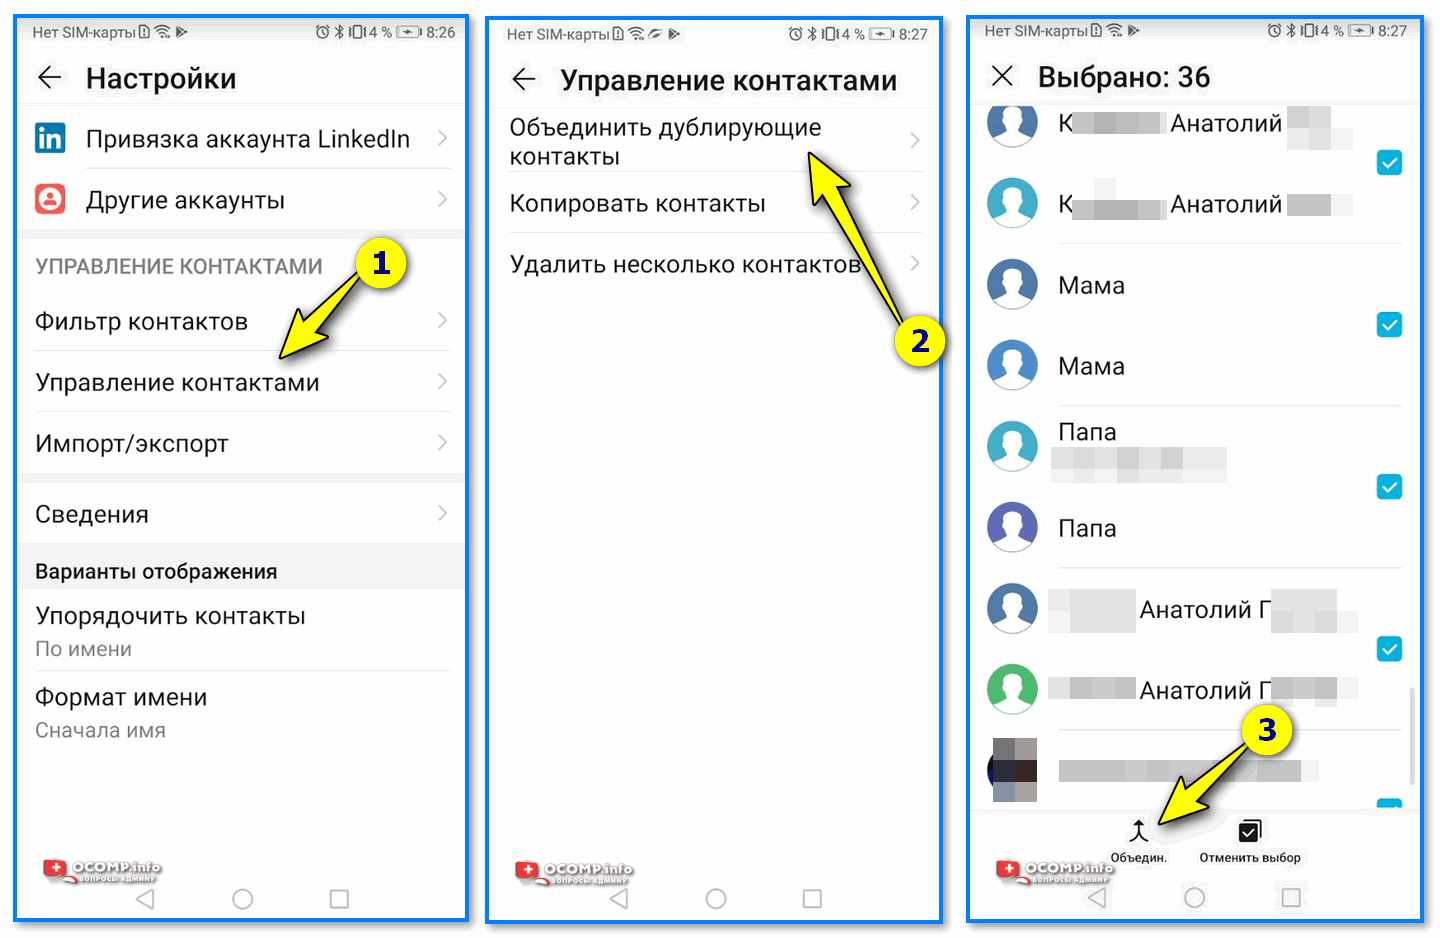 Как удалить контакт из телеграмма на телефоне навсегда на андроид бесплатно на русском языке андроид фото 48